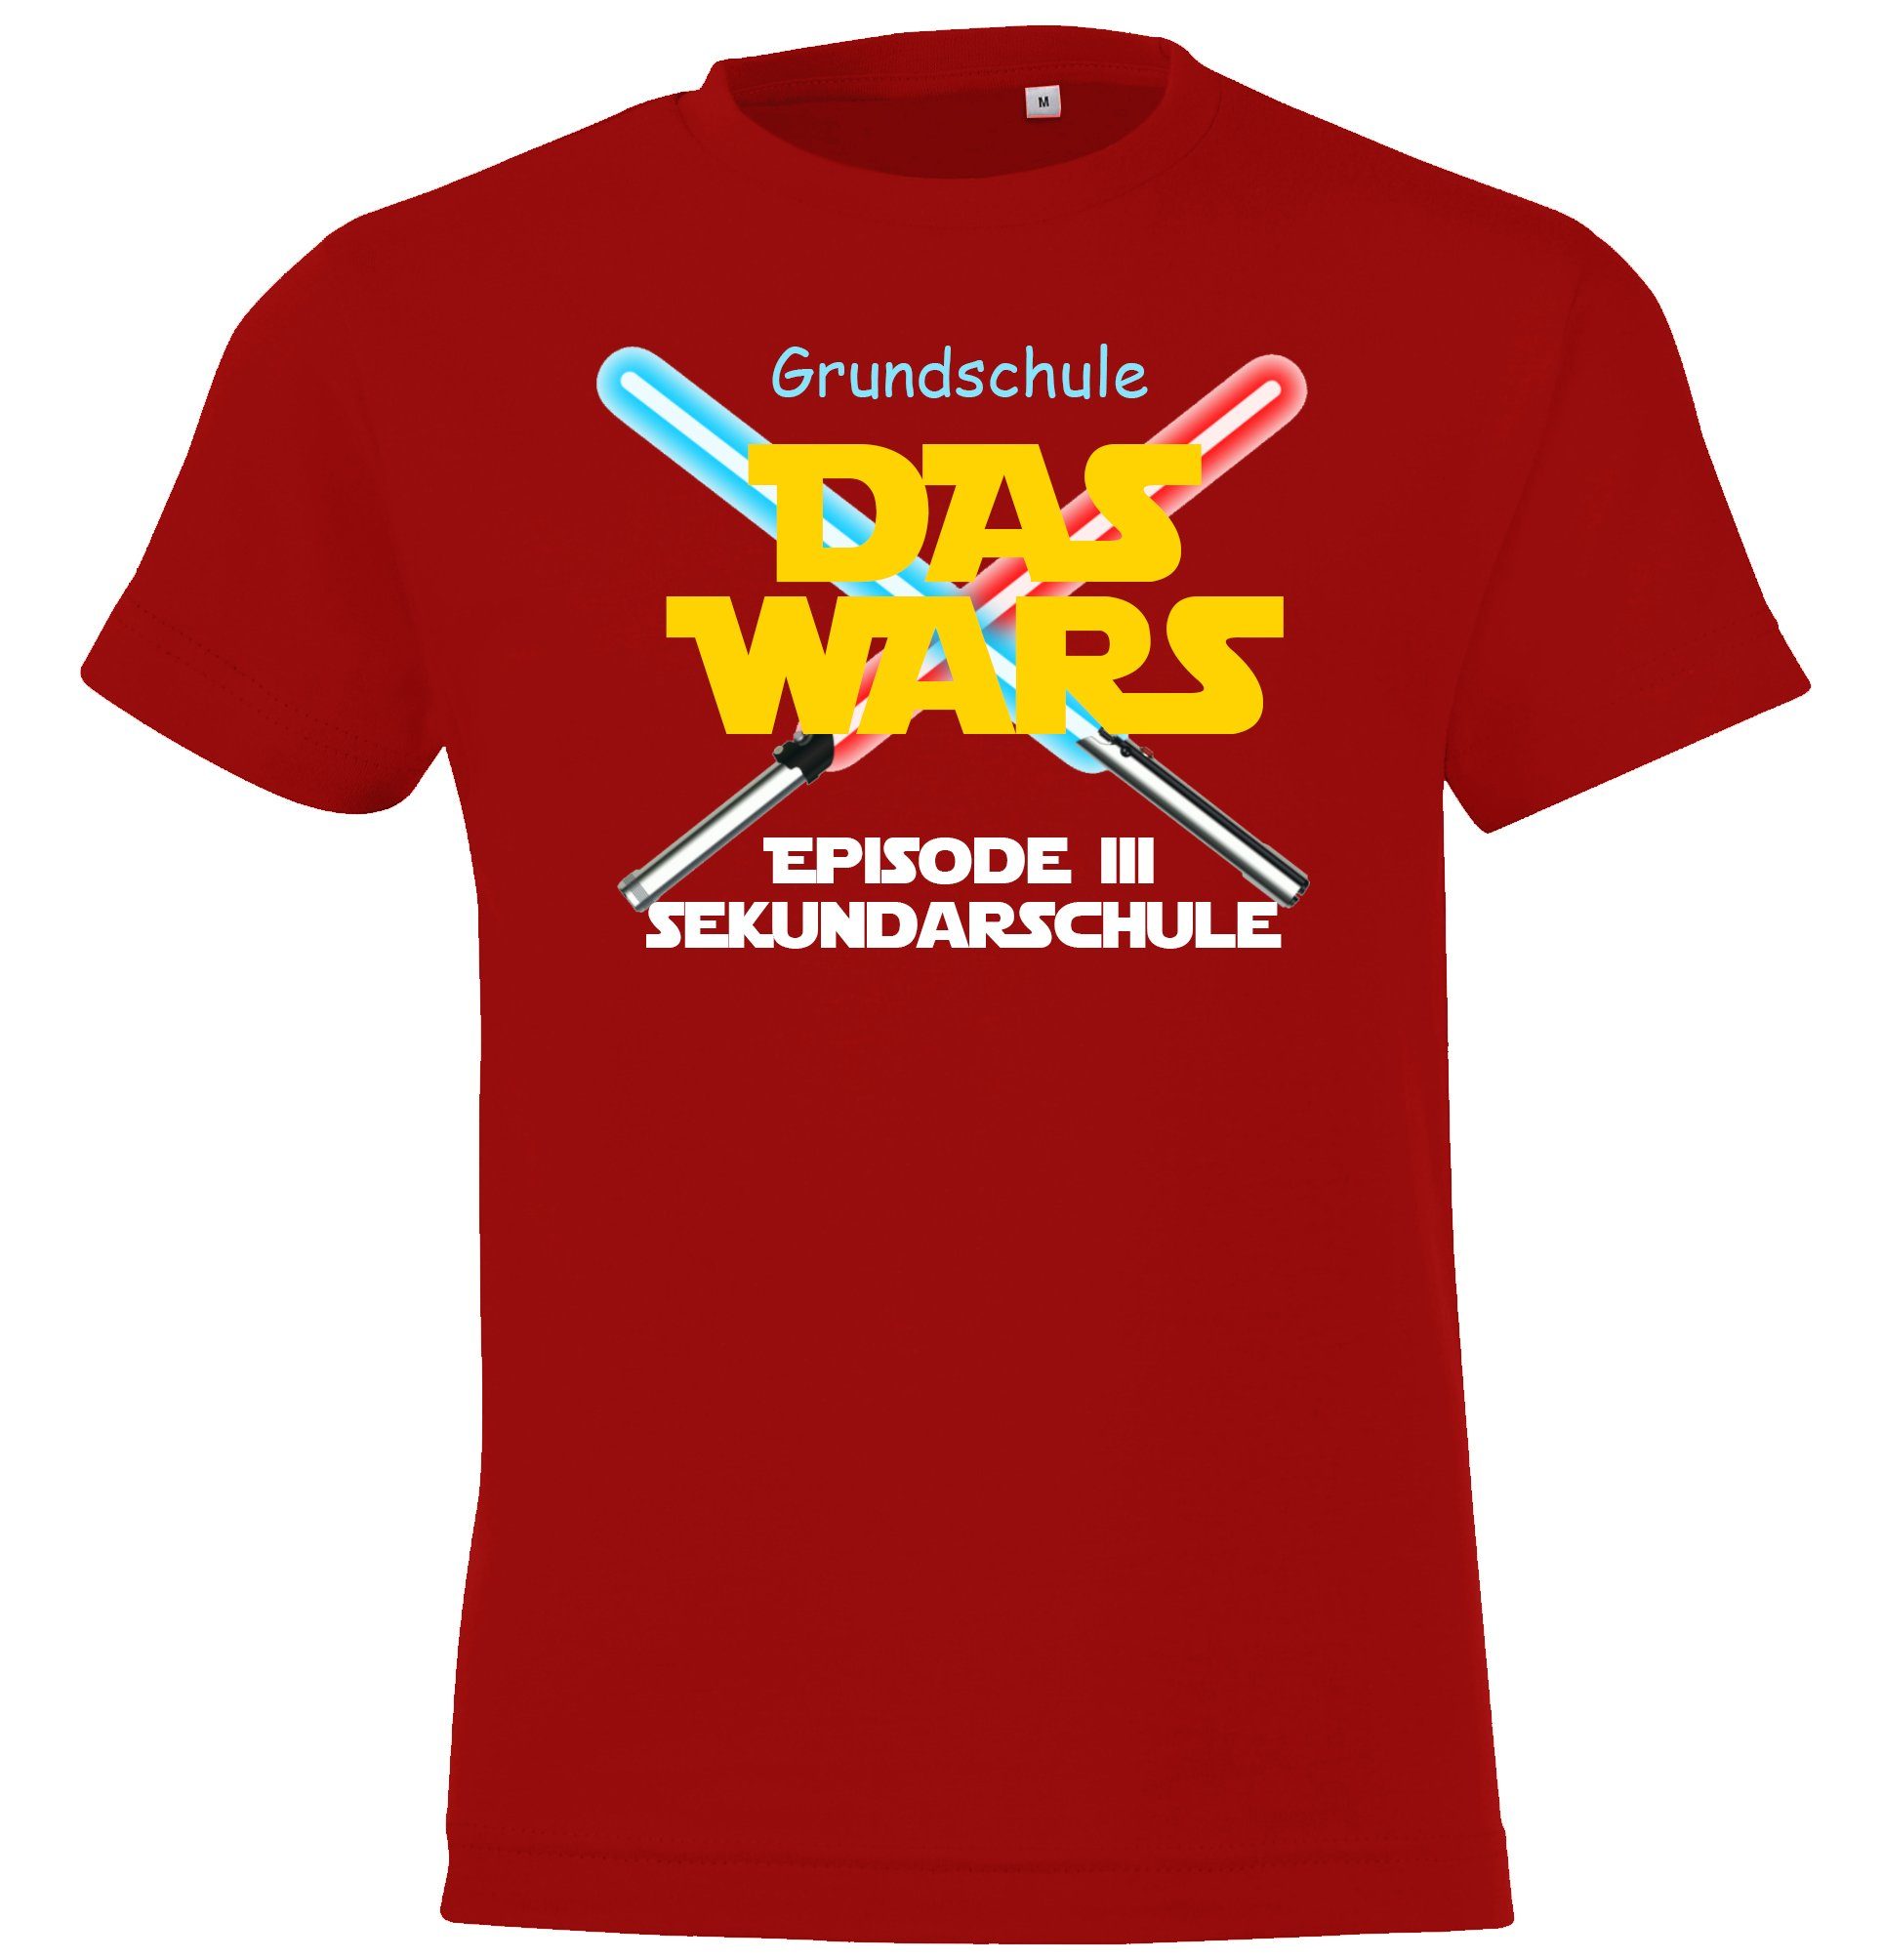 Youth Designz T-Shirt Grundschule der Shirt Motiv Rot Das mit lustigem Wars Kinder Schulzeit